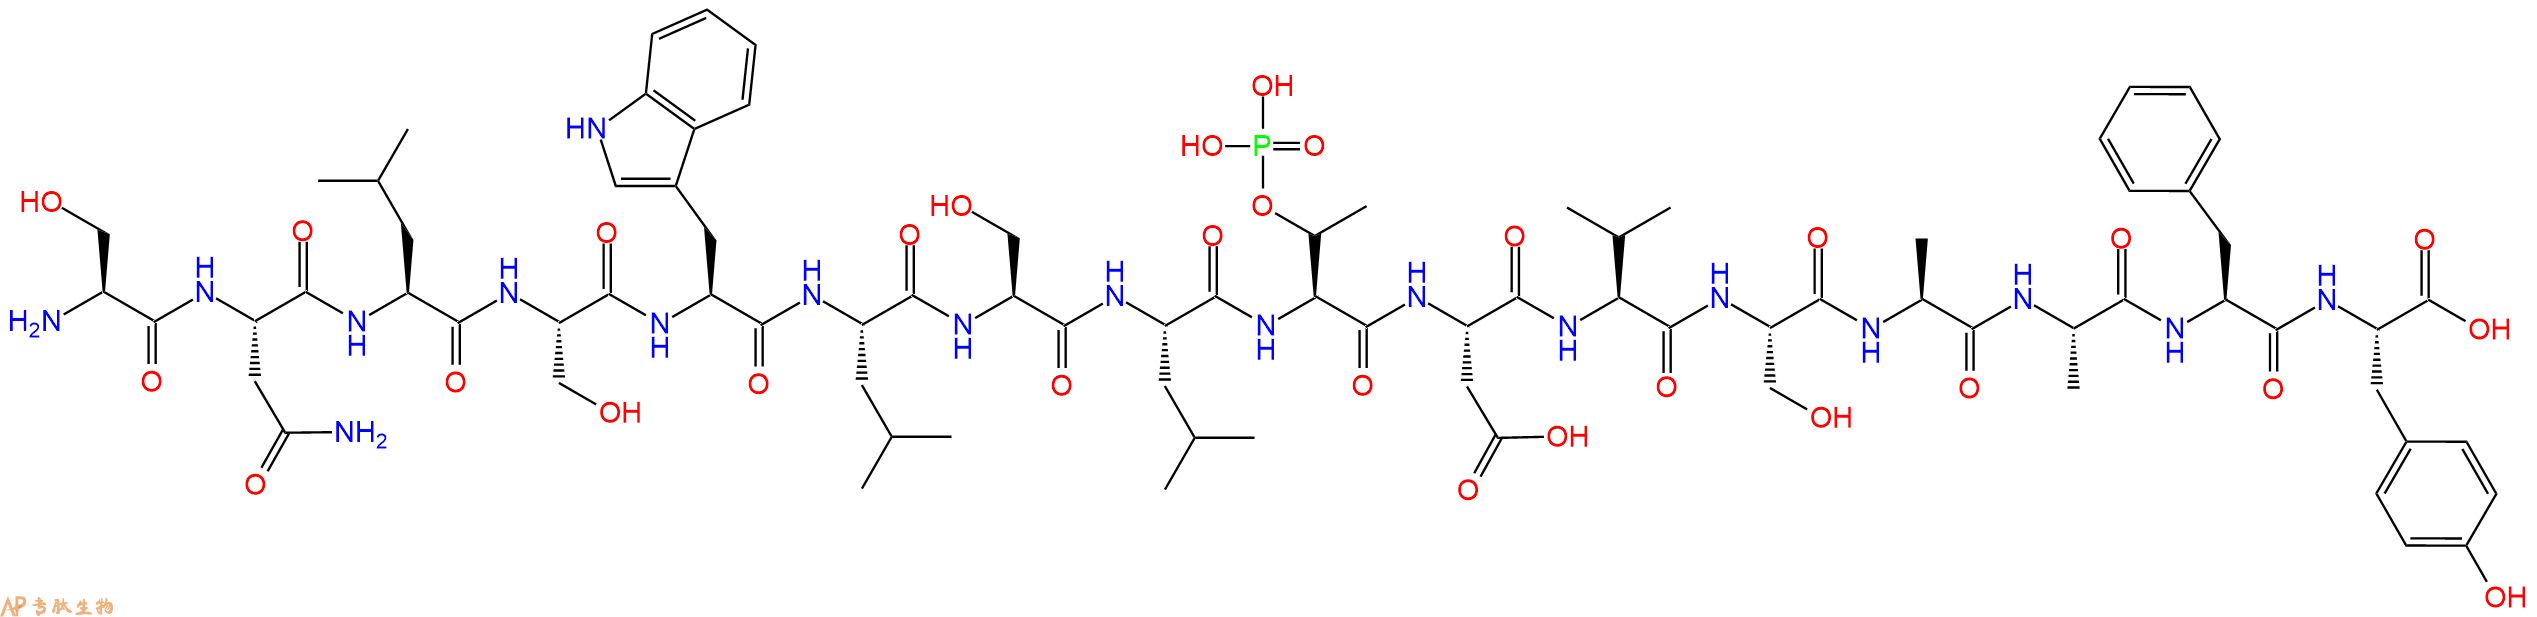 专肽生物产品H2N-Ser-Asn-Leu-Ser-Trp-Leu-Ser-Leu-pThr-Asp-Val-S